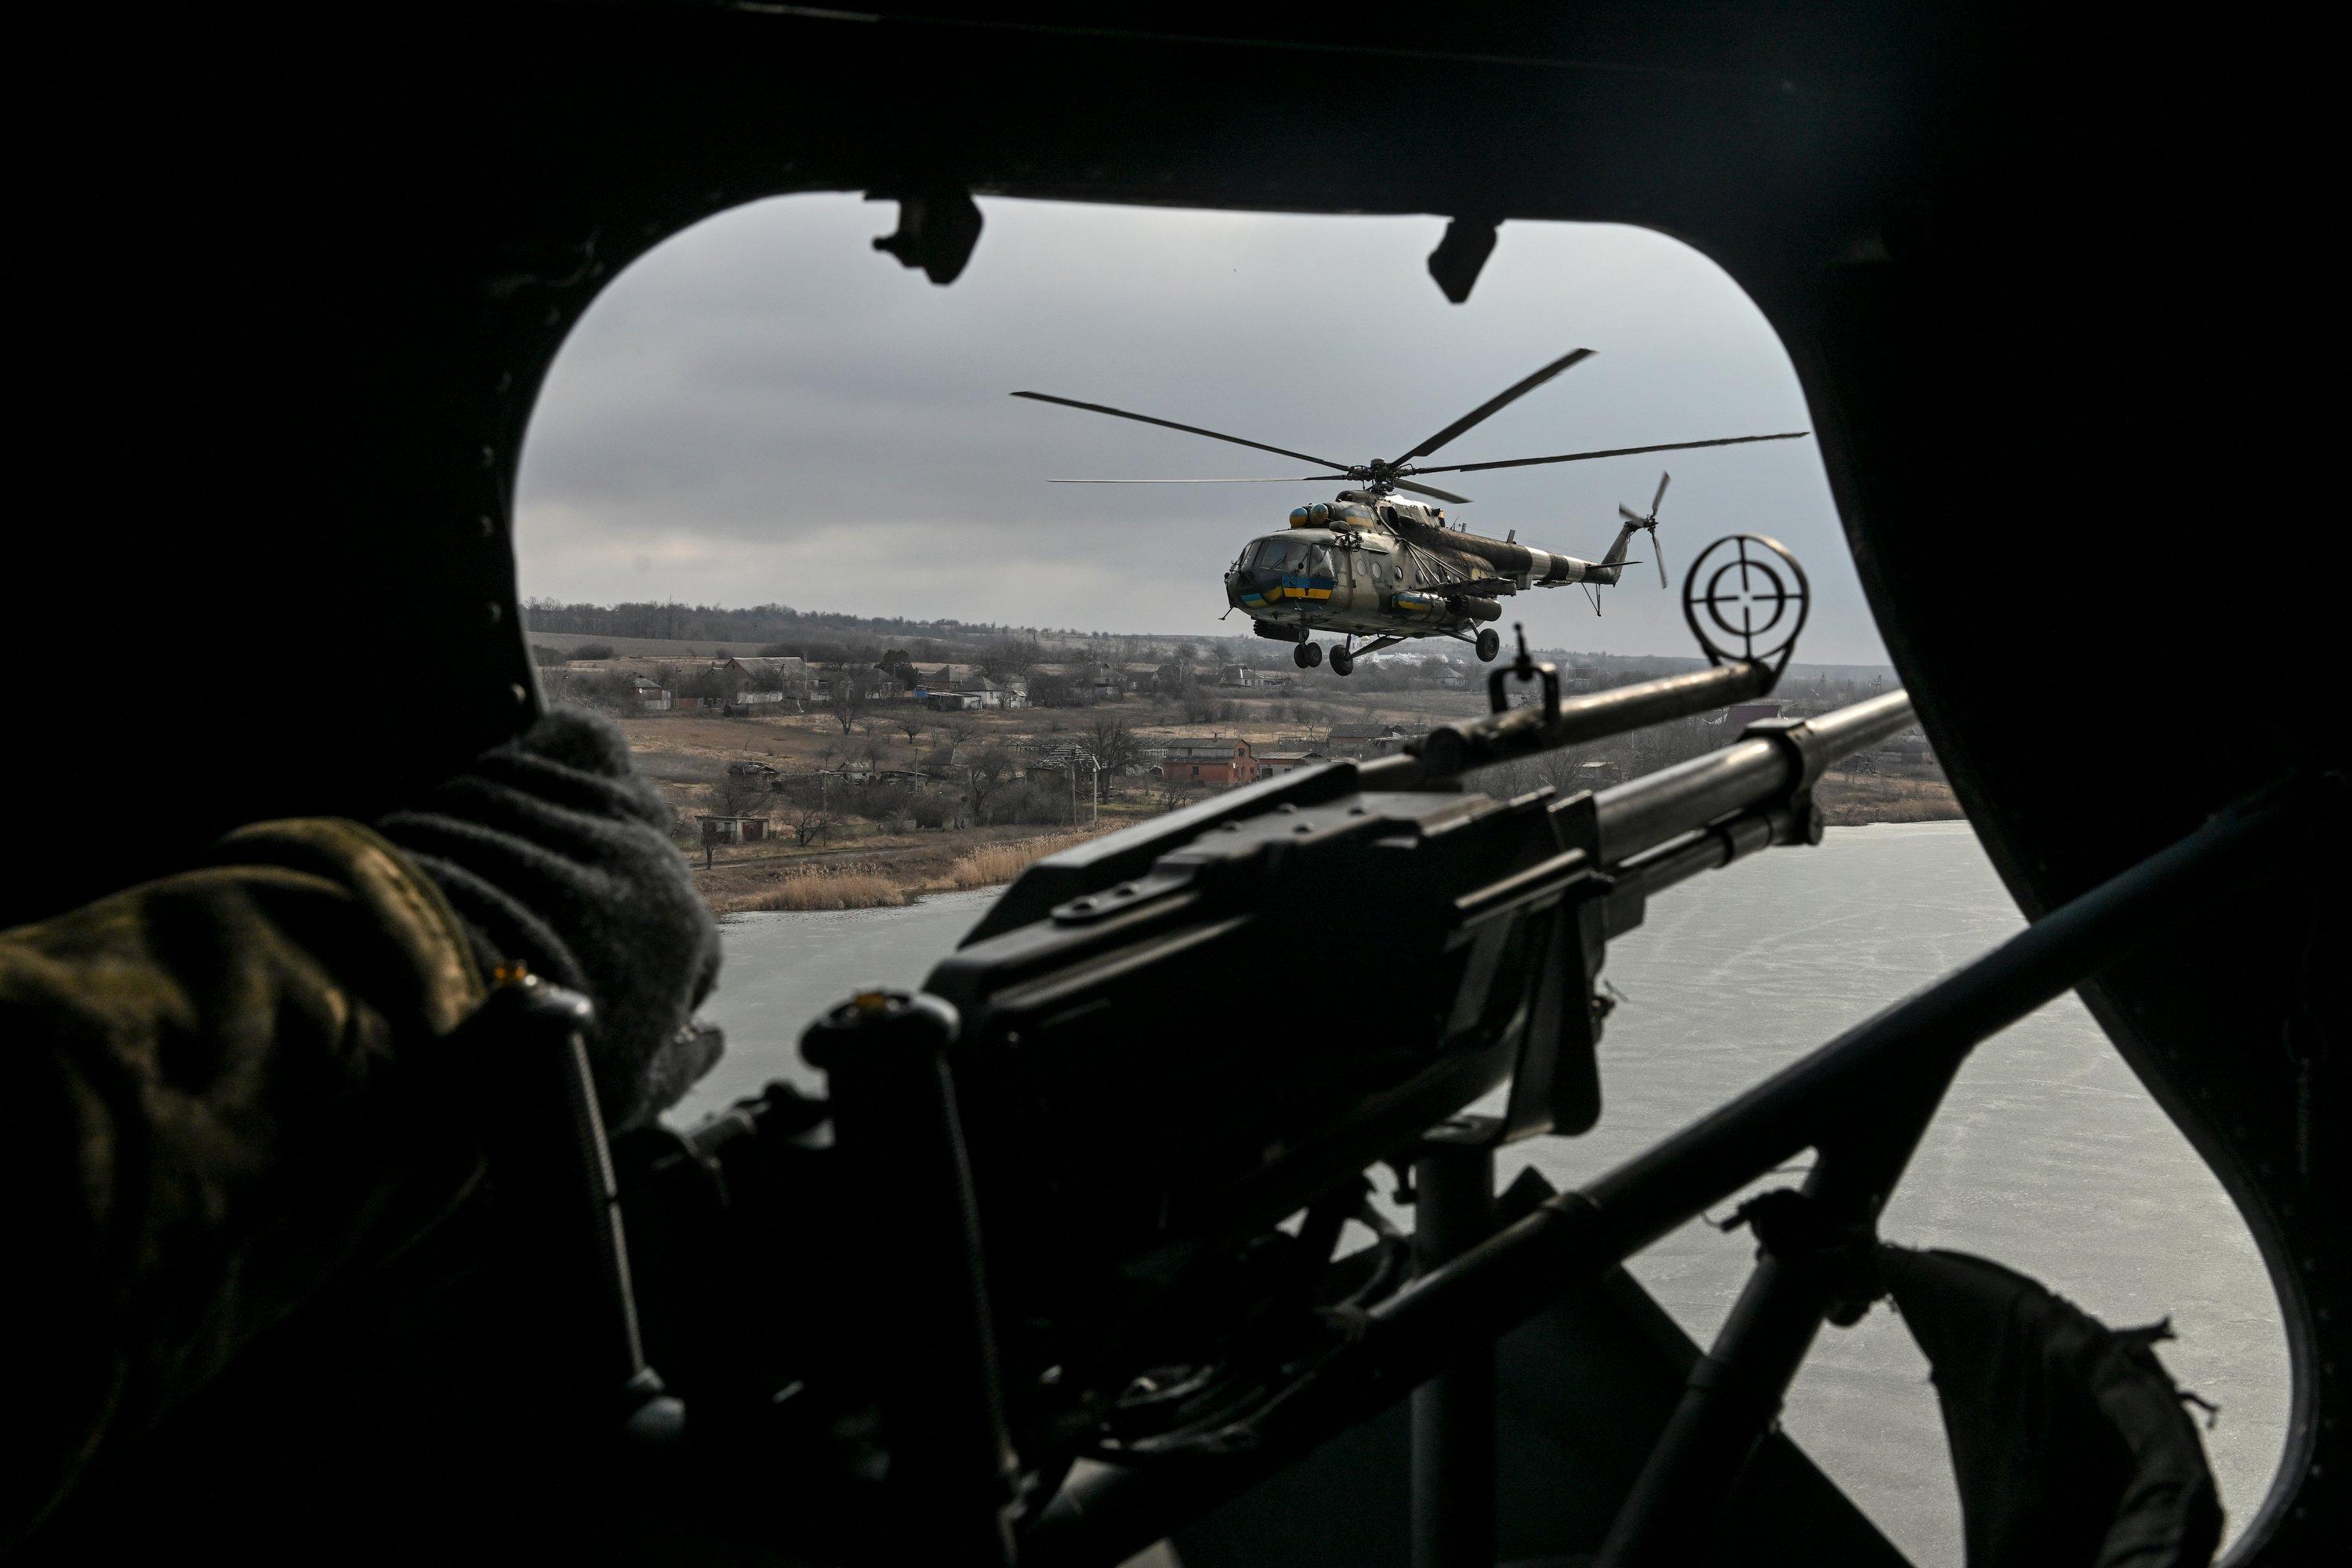 Zdjęcie wykonane z wnętrza helikoptera. Na pierwszym planie broń maszynowa wystawiona przez otwarty właz do helikoptera. Na dalszym planie inne helikopter lecący na zbiornikiem wodnym.